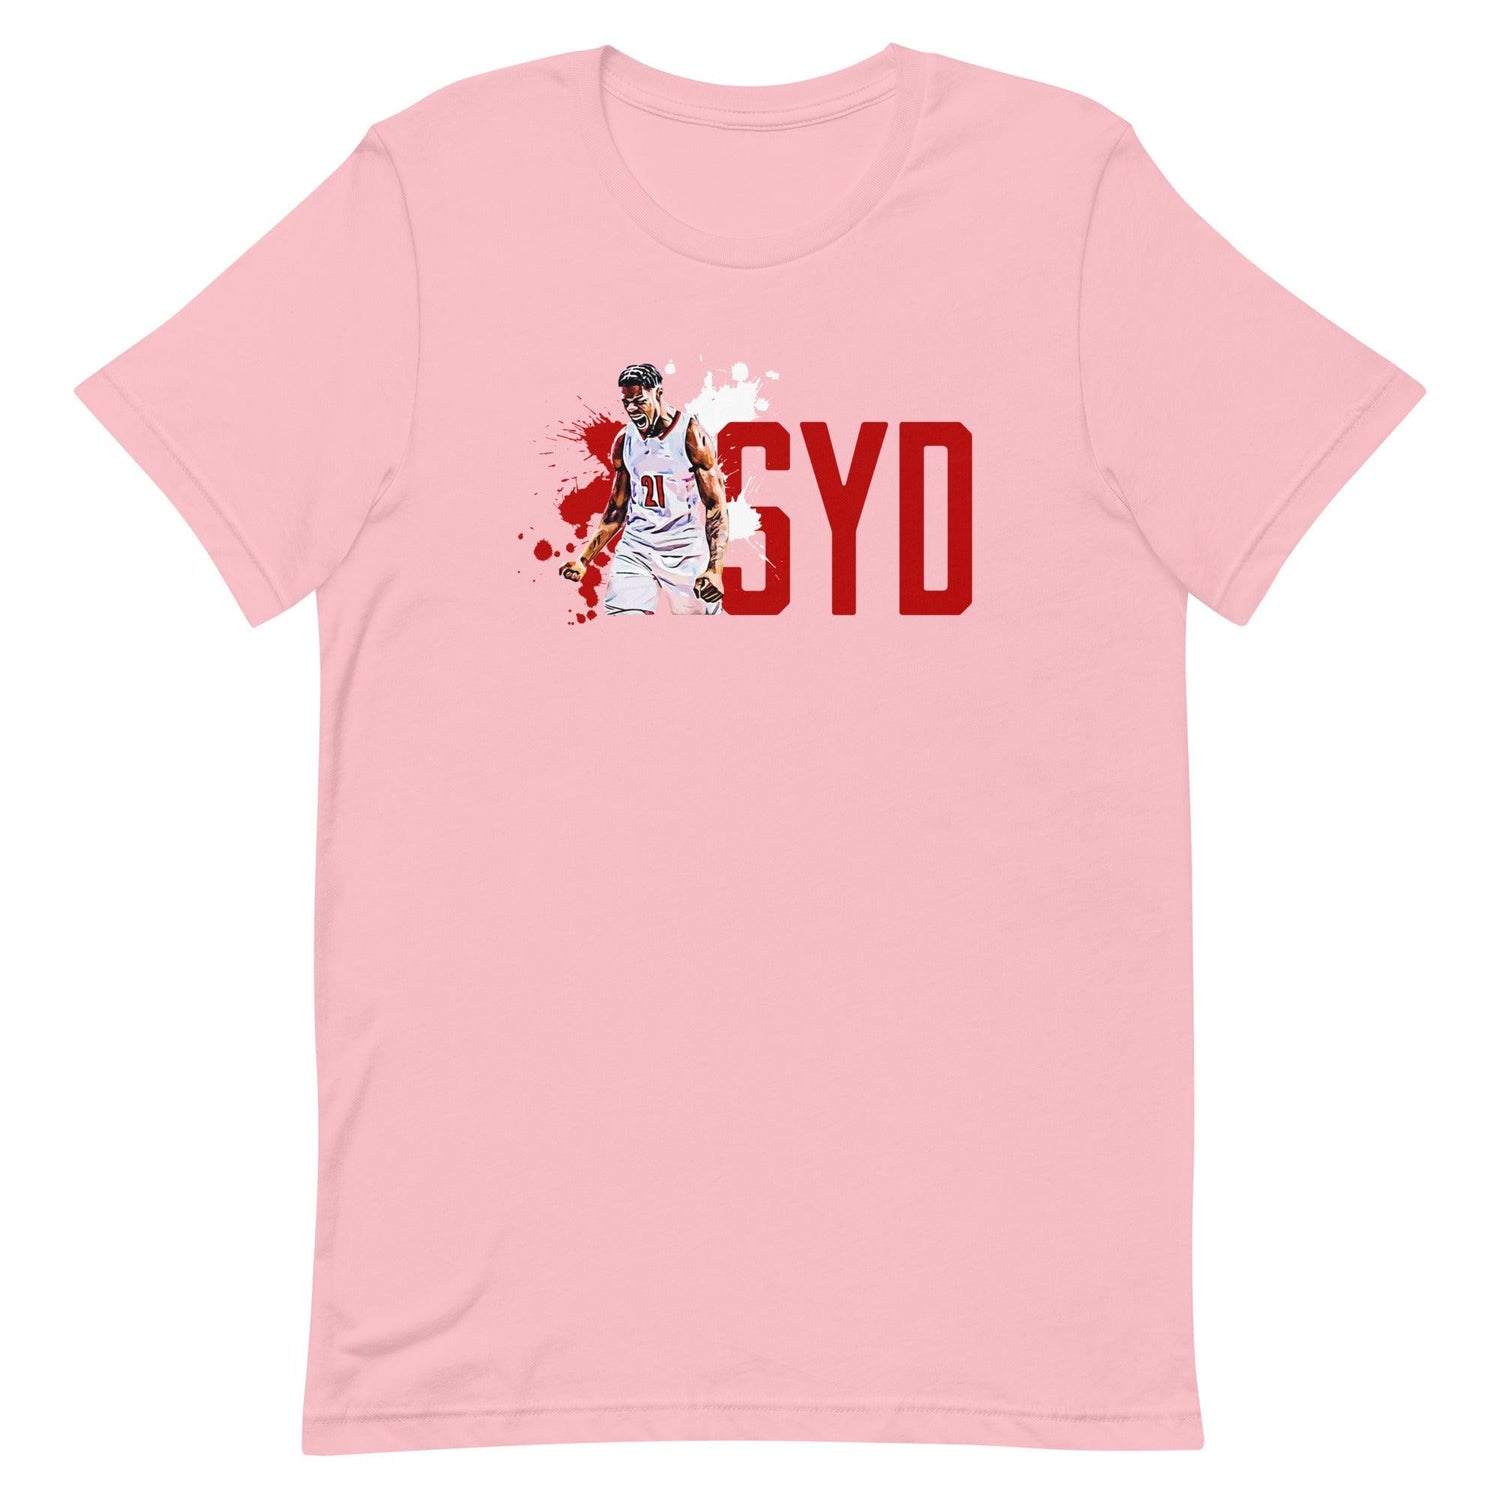 Sydney Curry "SYD" t-shirt - Fan Arch